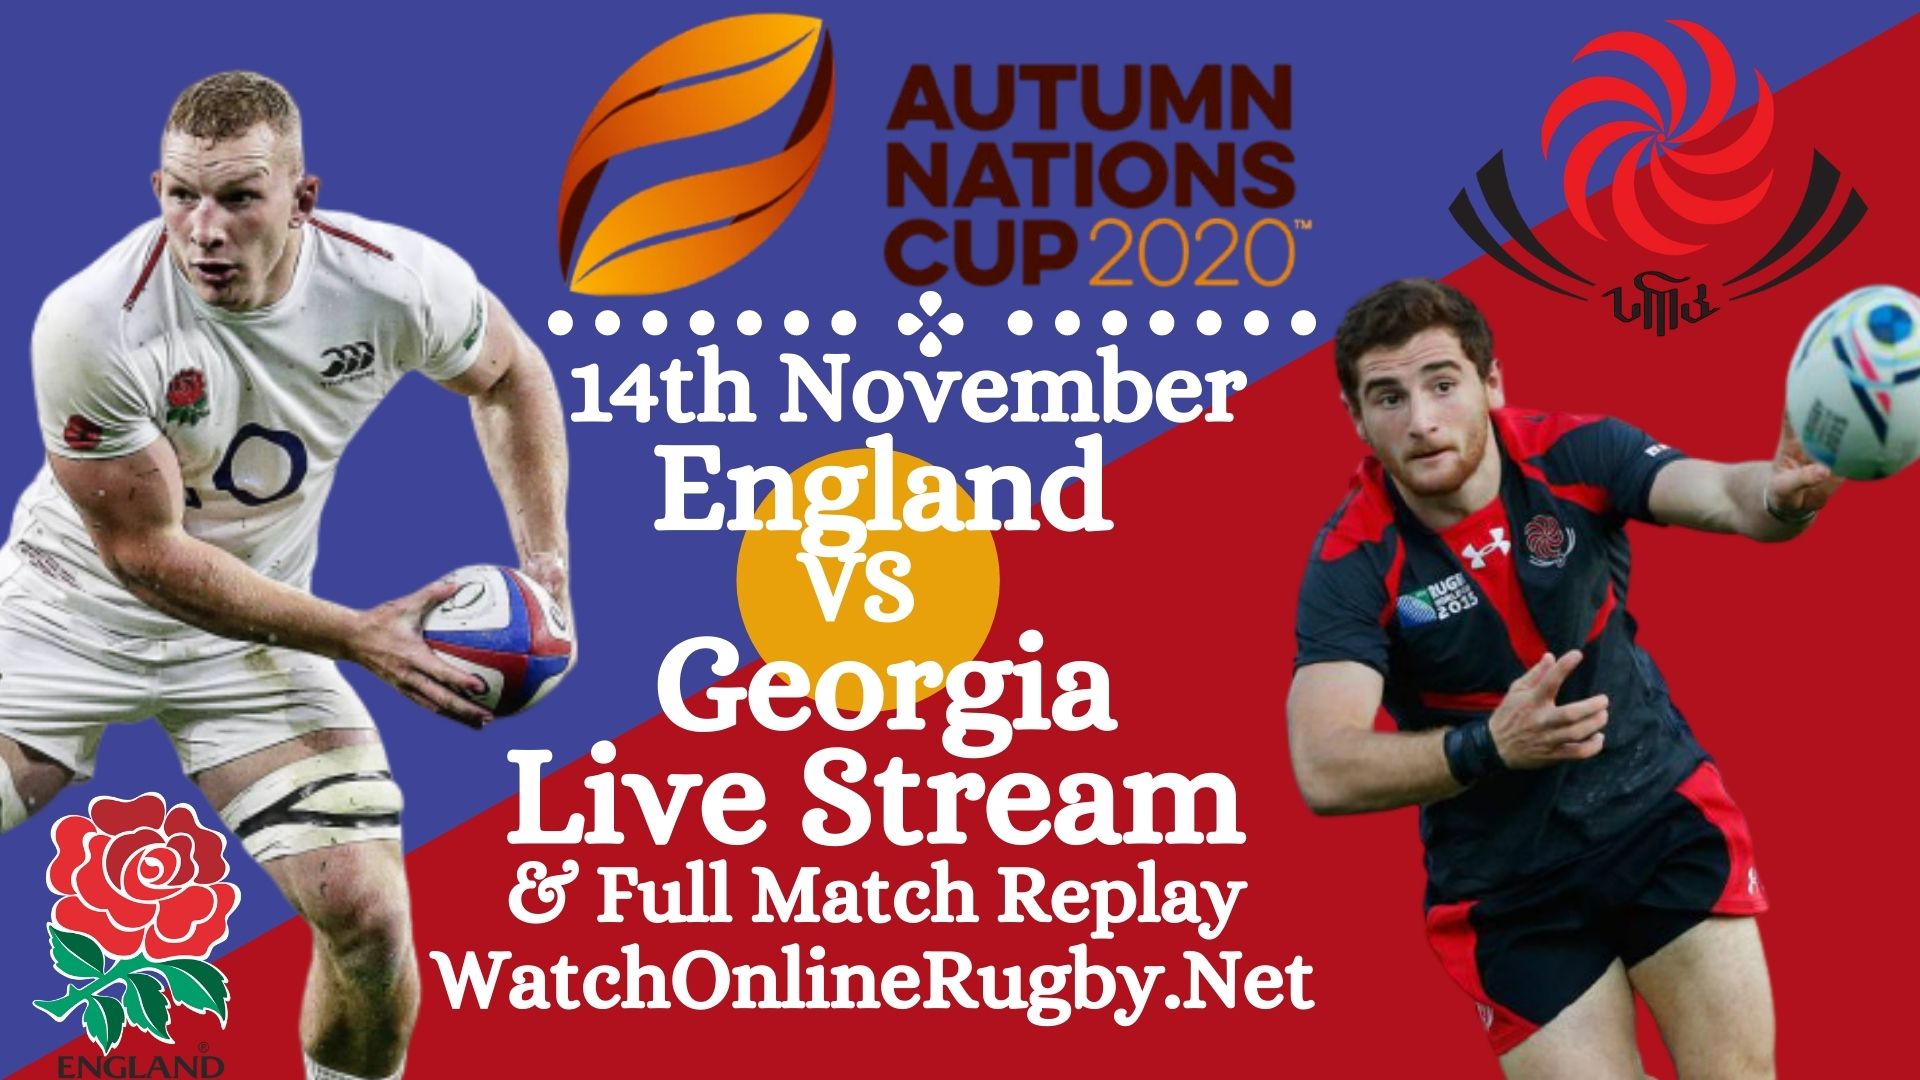 England VS Georgia Live stream